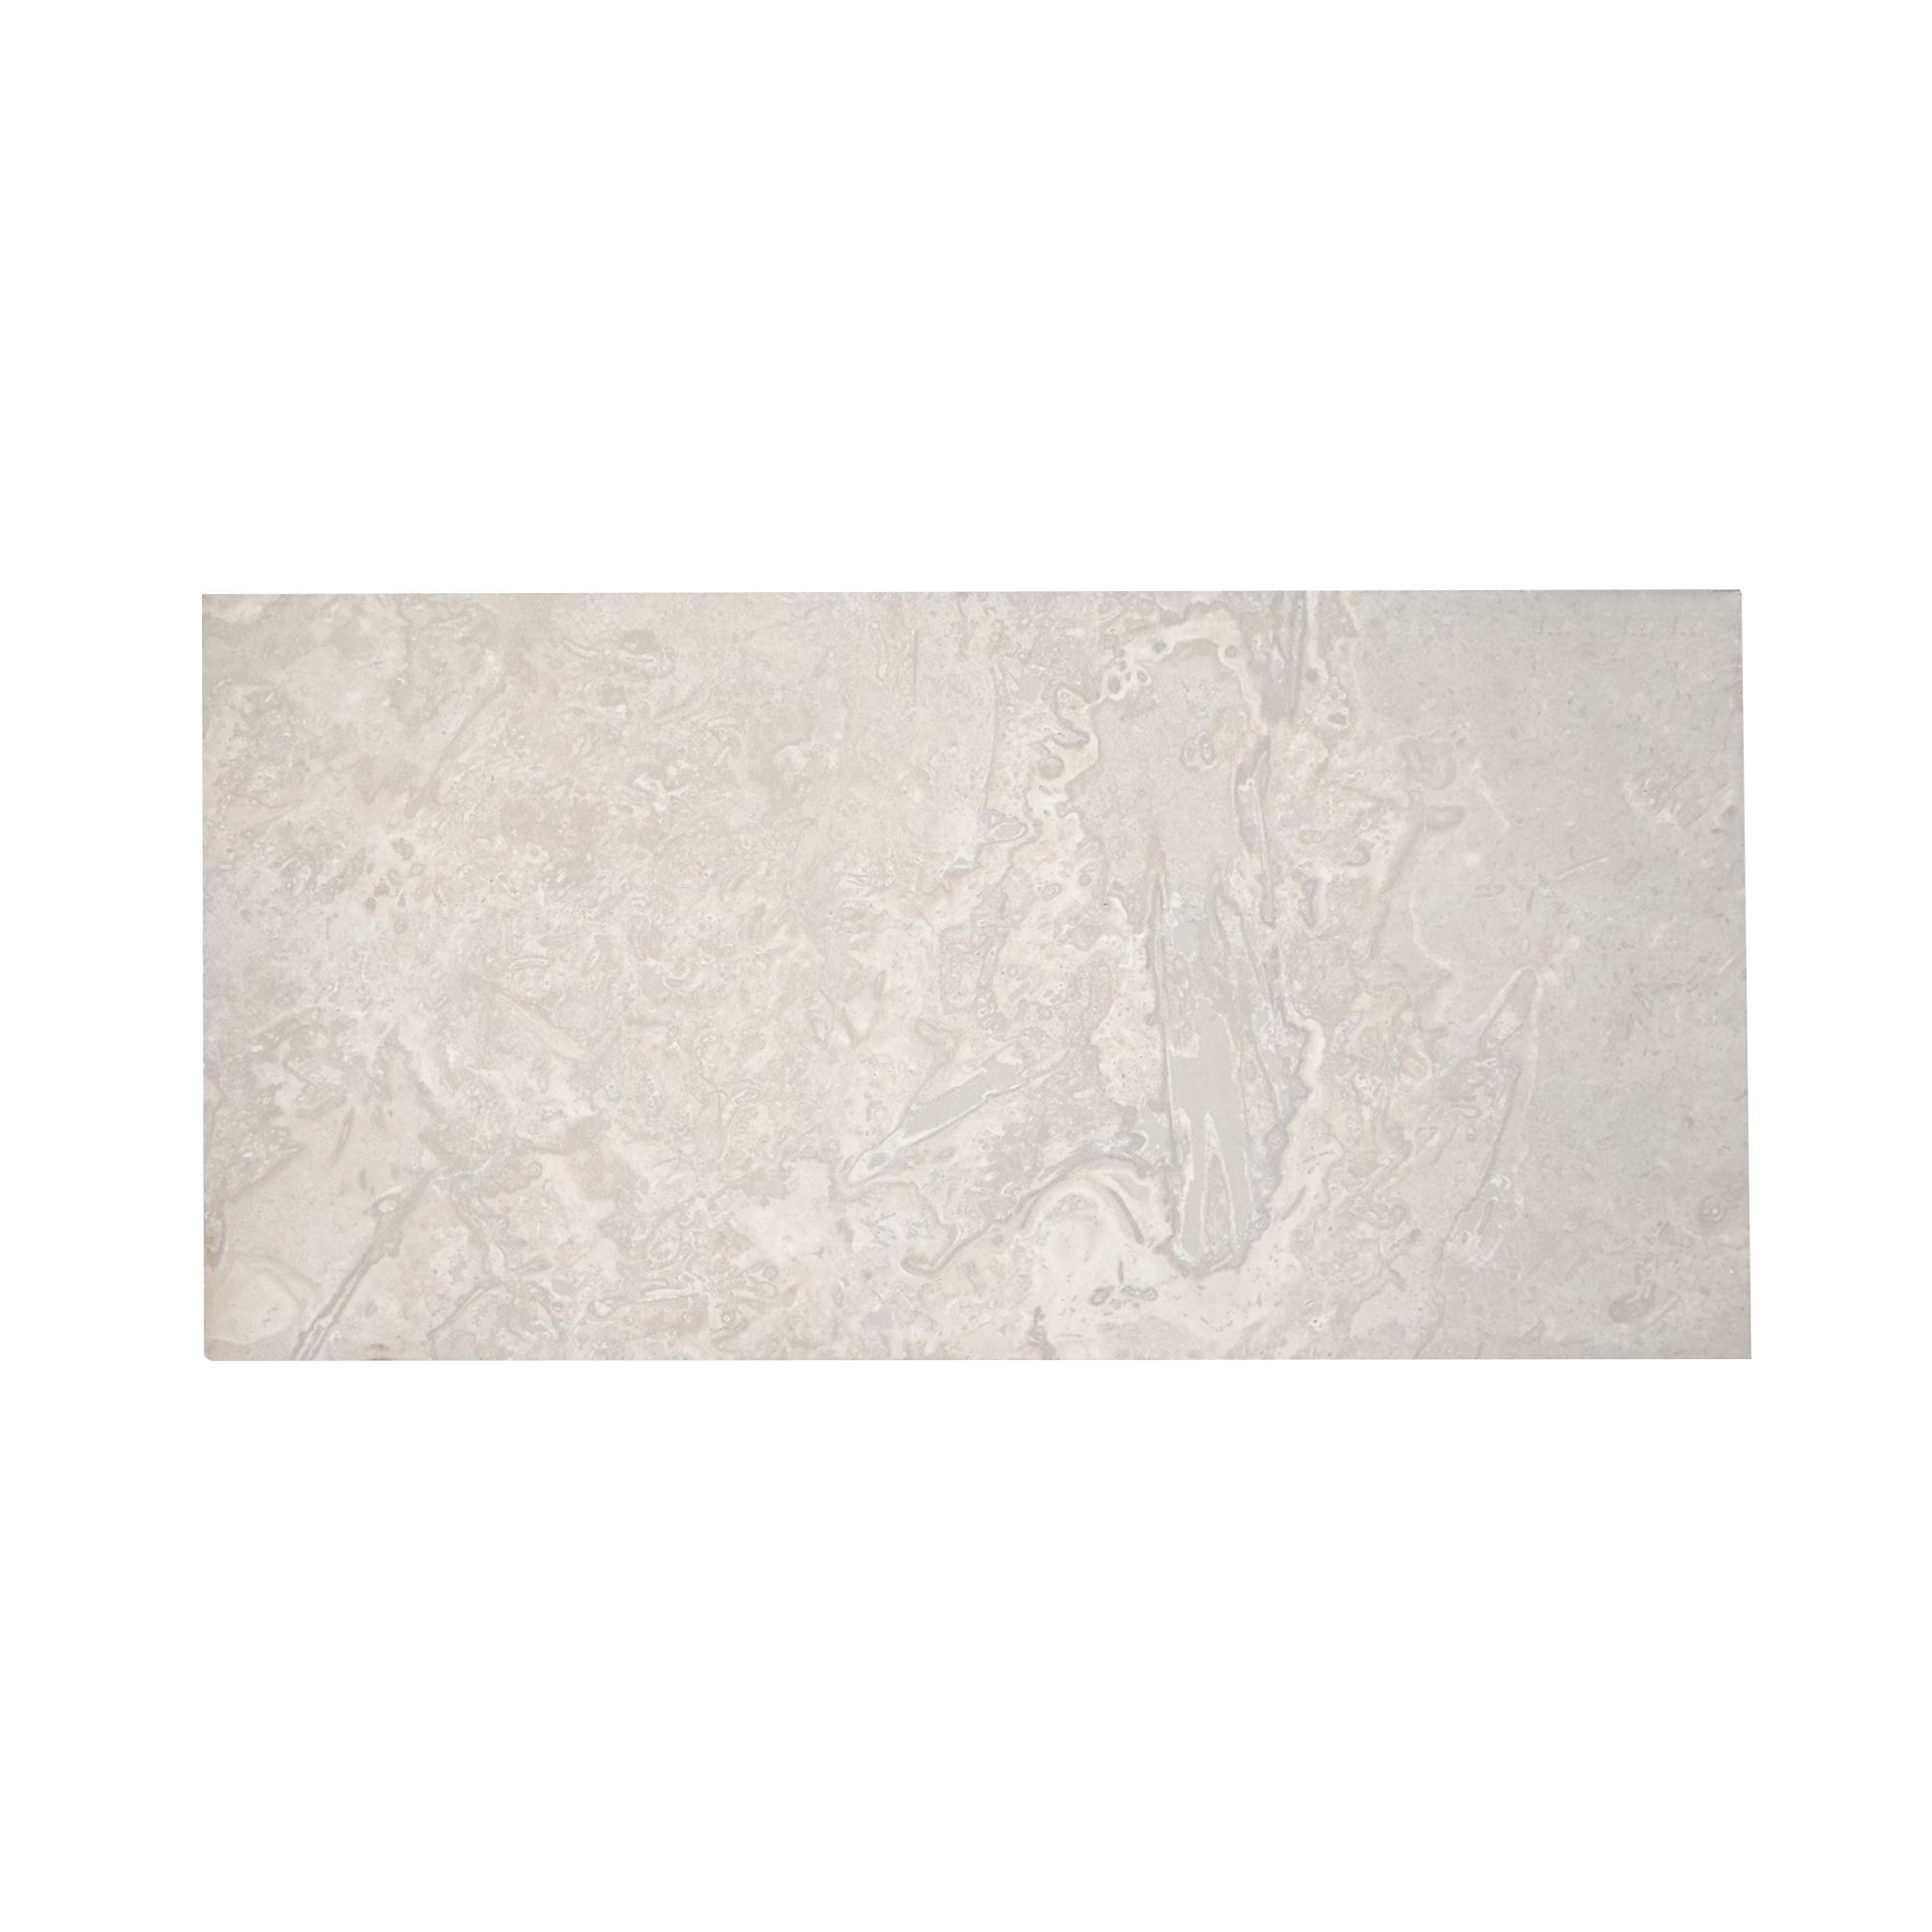 Johnson Tiles Spencer White Matt Natural Stone effect Ceramic Indoor Wall & floor Tile, (L)600mm (W)300mm, 0.9m²